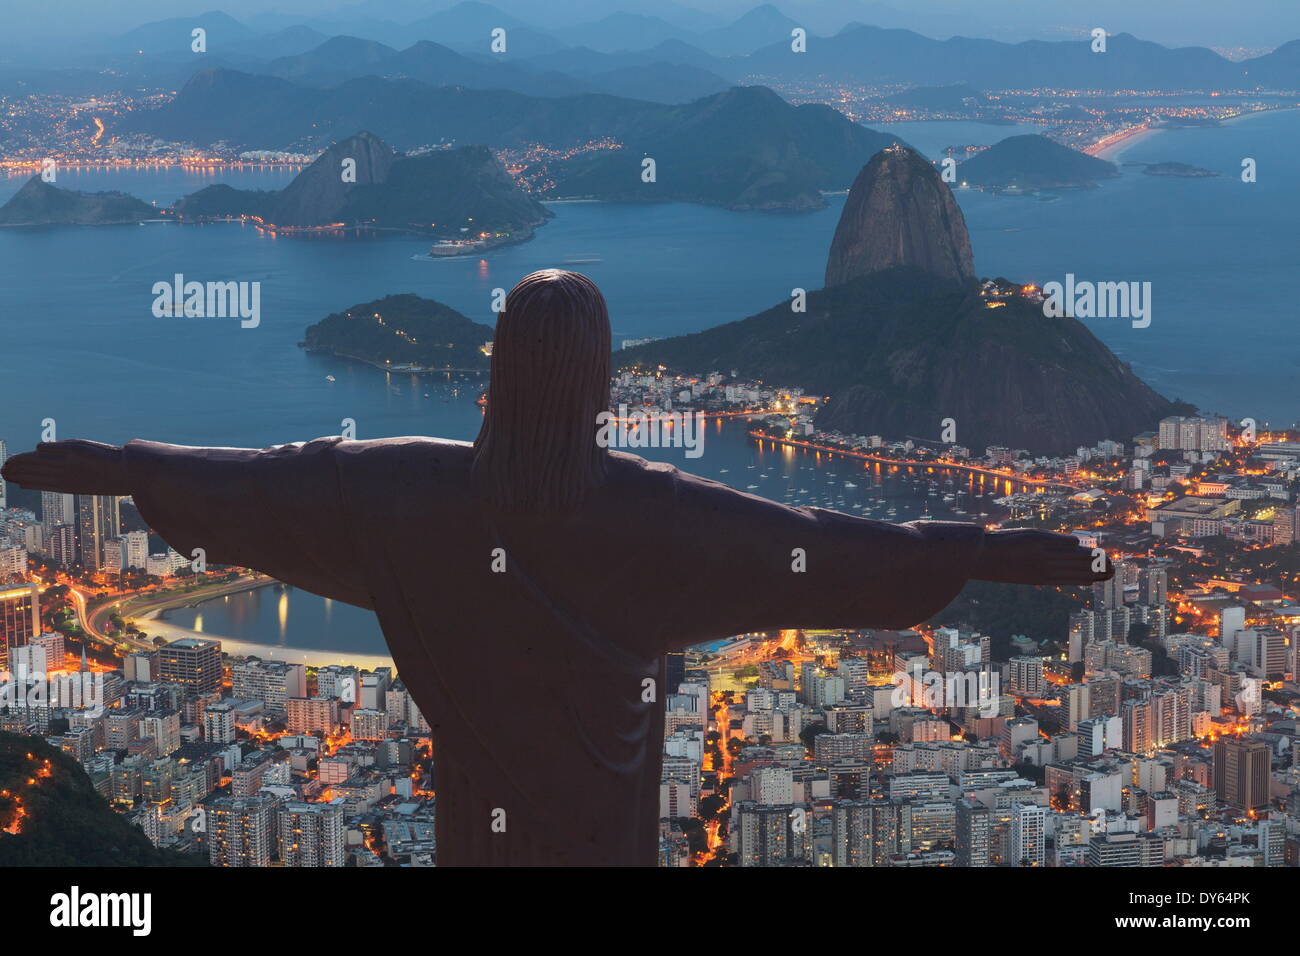 Statue du Christ Rédempteur, Corcovado, Rio de Janeiro, Brésil, Amérique du Sud Banque D'Images